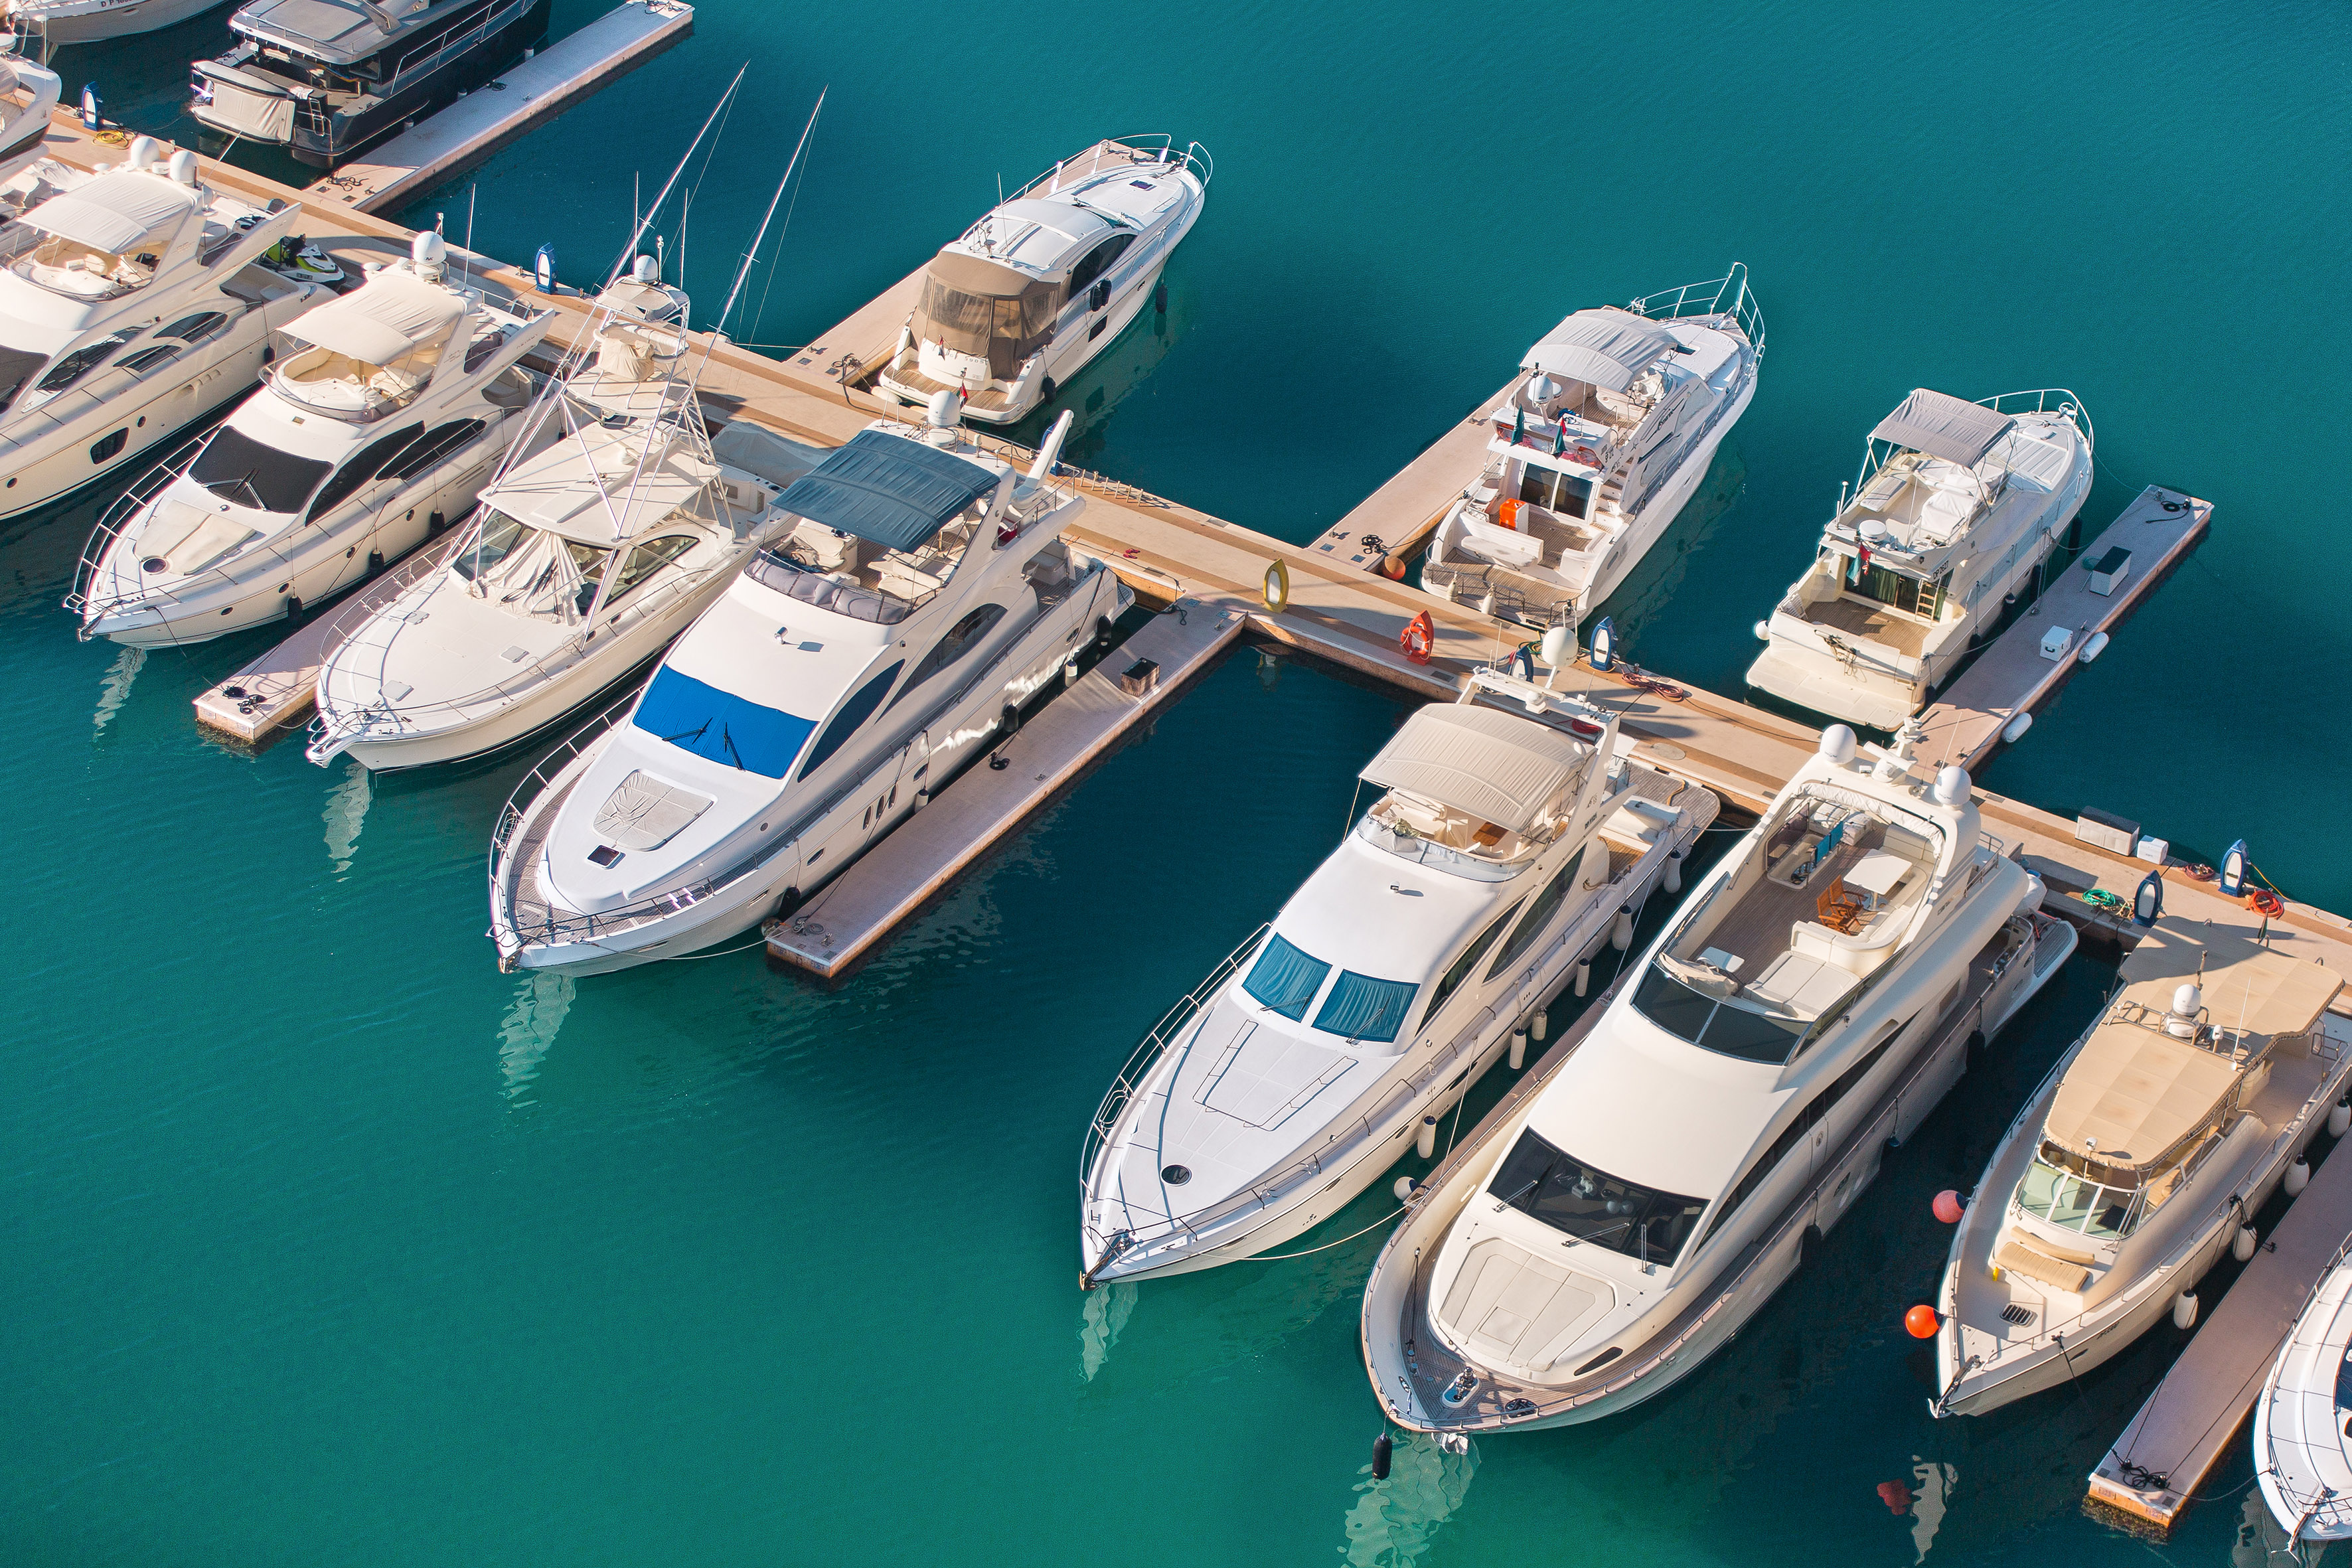 "دبي الملاحية" تتيح خدمة "الاستخدام المؤقت للأرصفة" لكافة القوارب واليخوت المحلية الزائرة في مراسي الإمارة